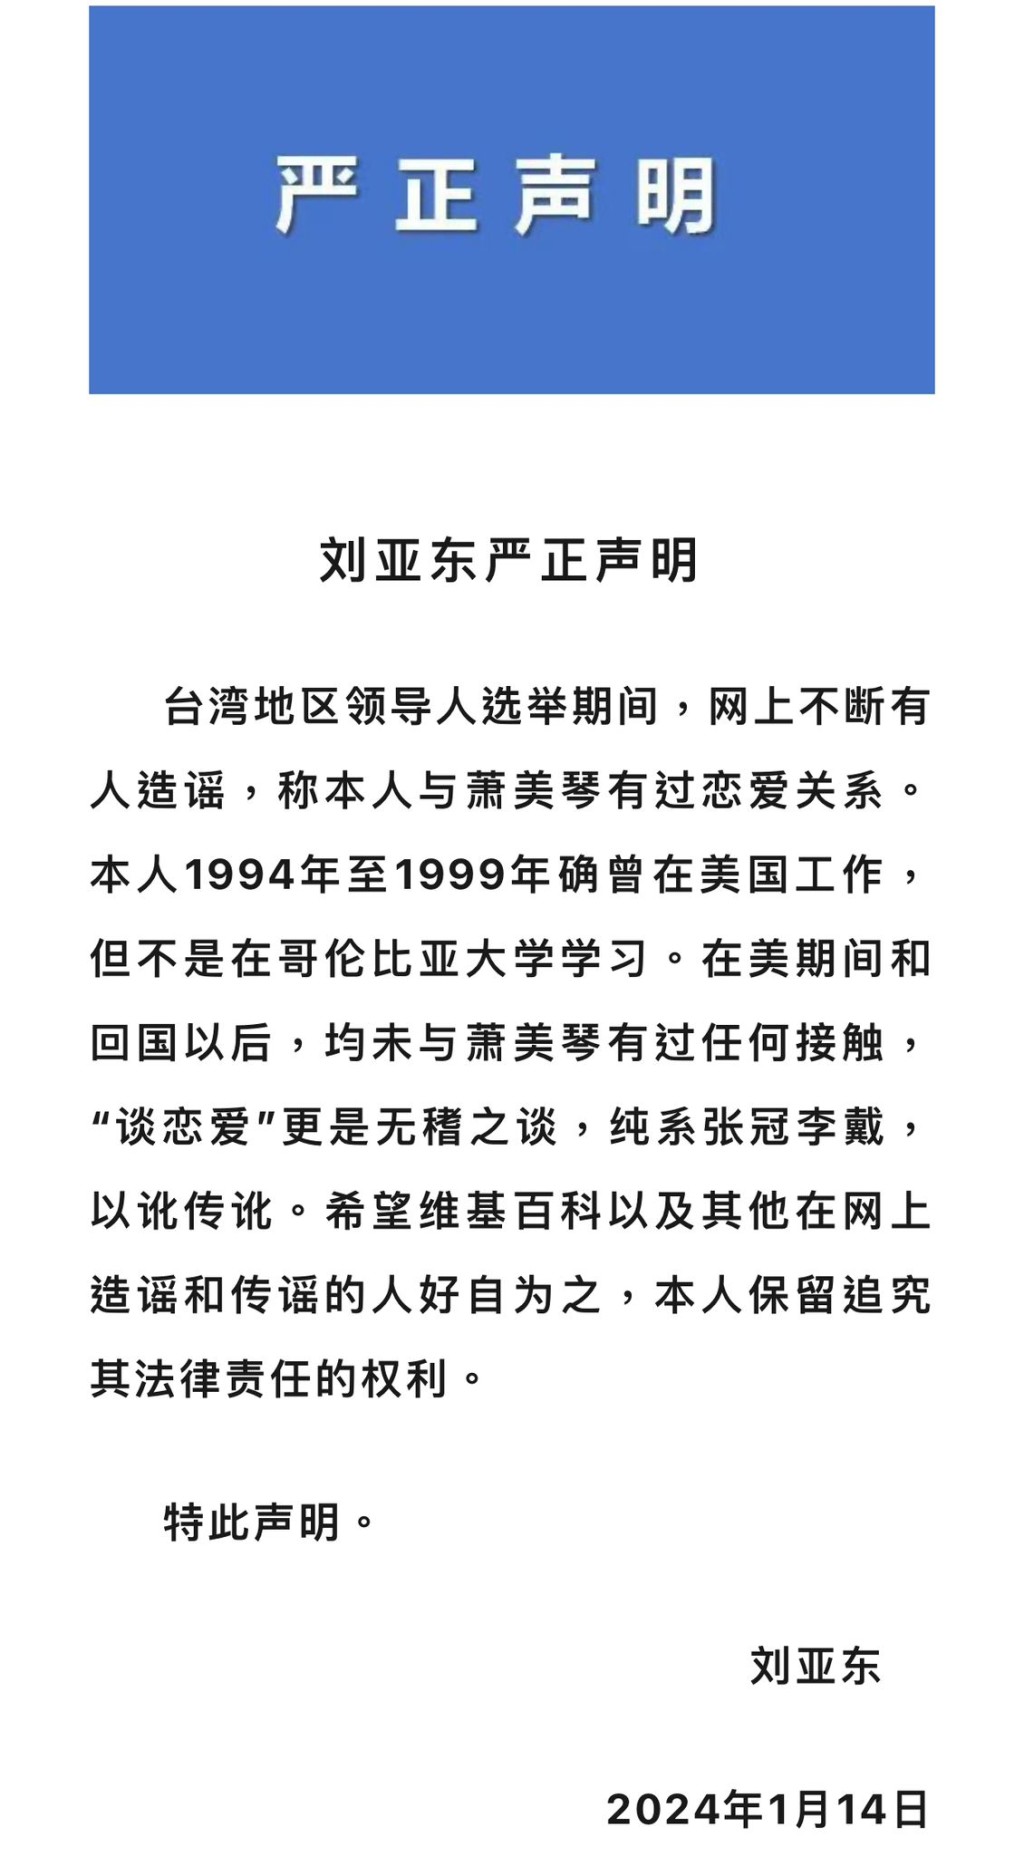 刘亚东发声明痛斥网上指他与萧美琴曾谈恋爱的谣言。